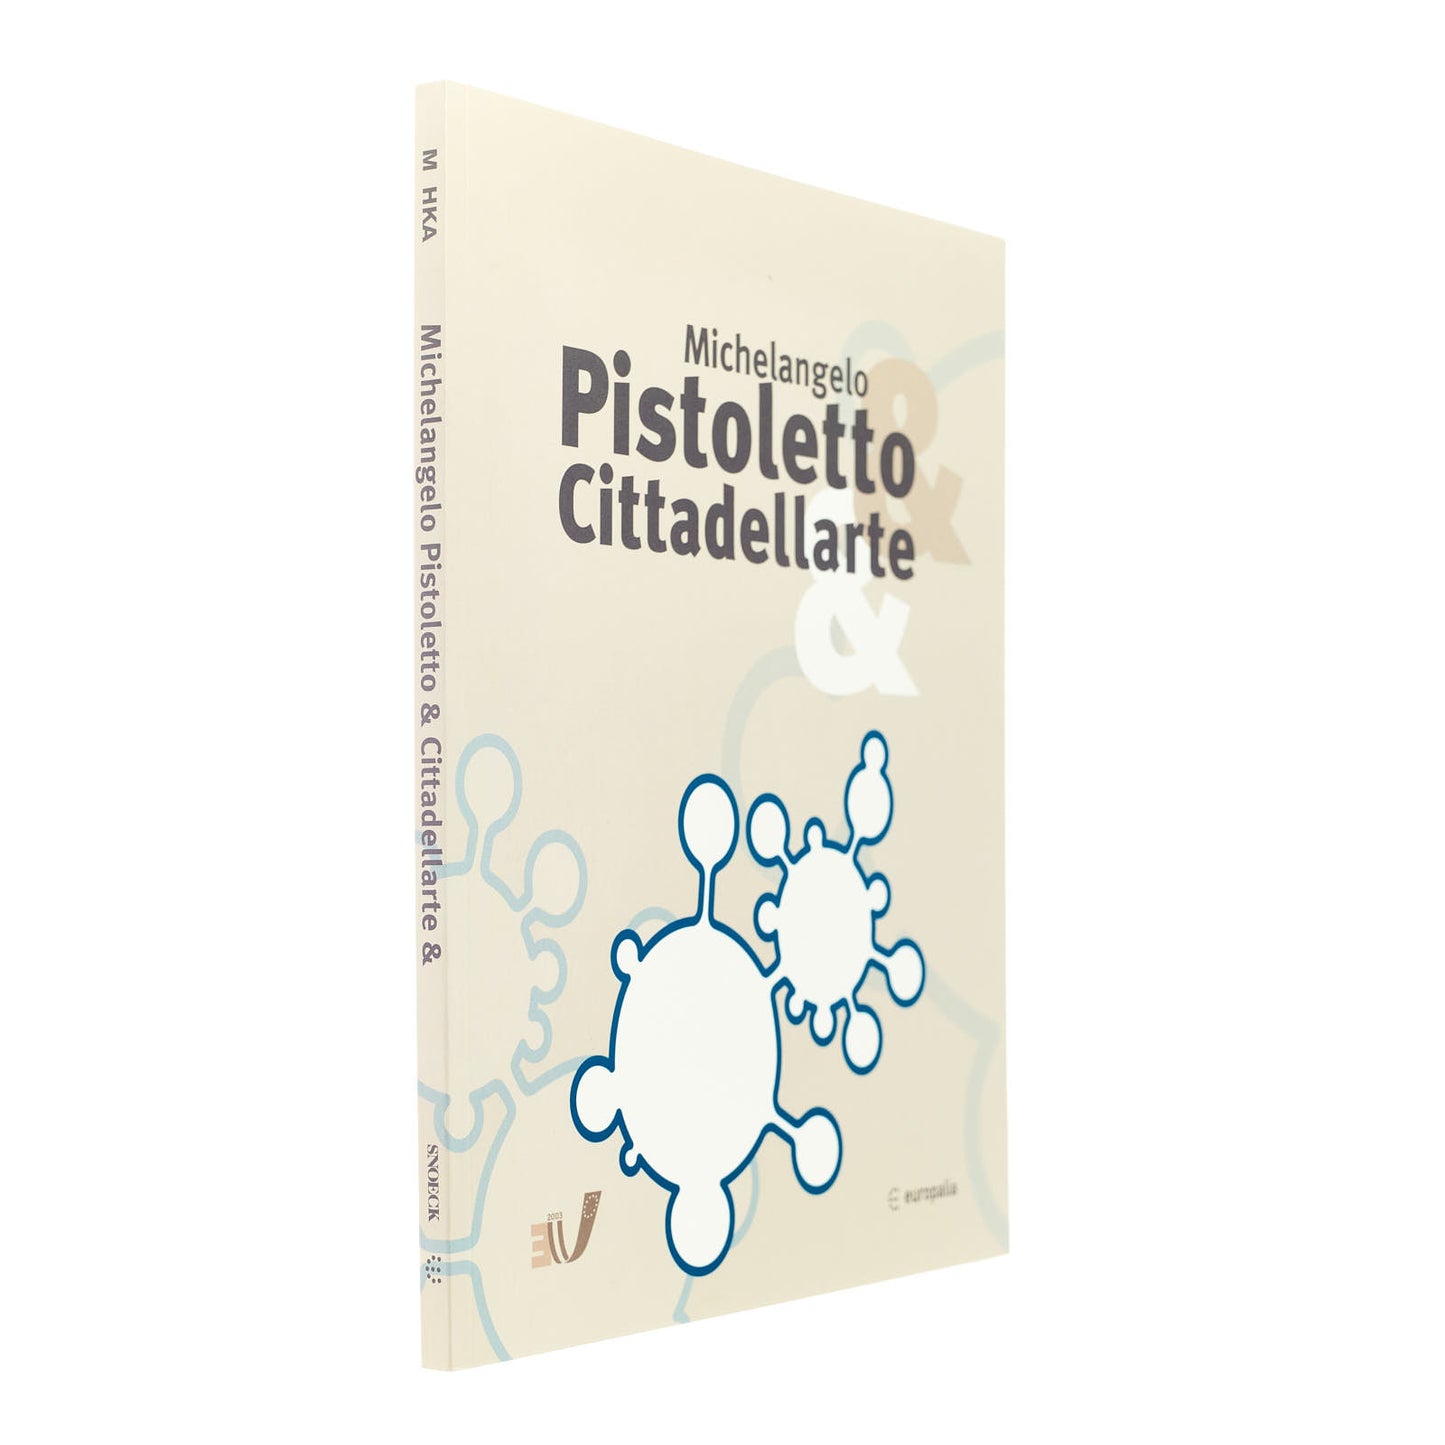 Michelangelo Pistoletto e Cittadellarte (catalogo mostra)